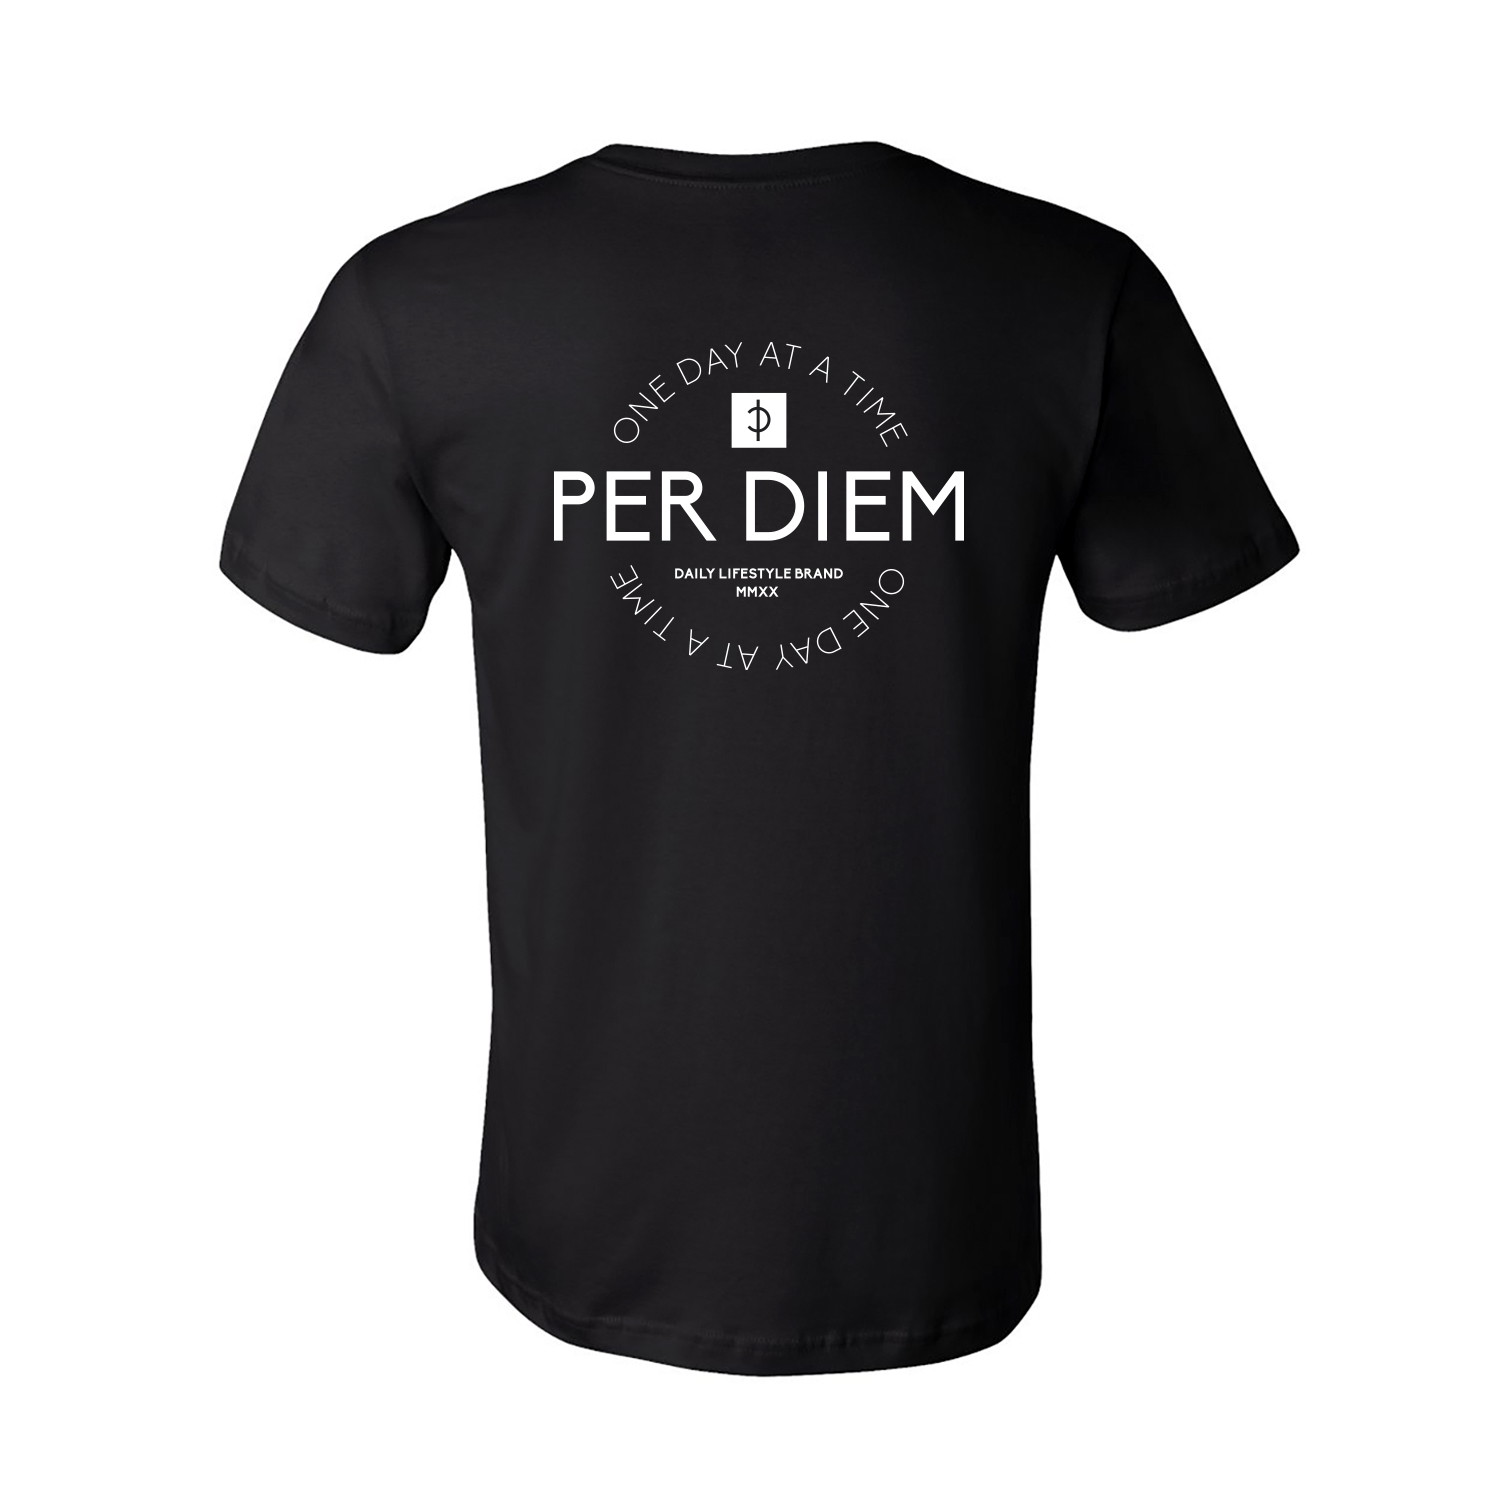 Per Diem Circle Logo TShirt Black Per Diem One day at a time.